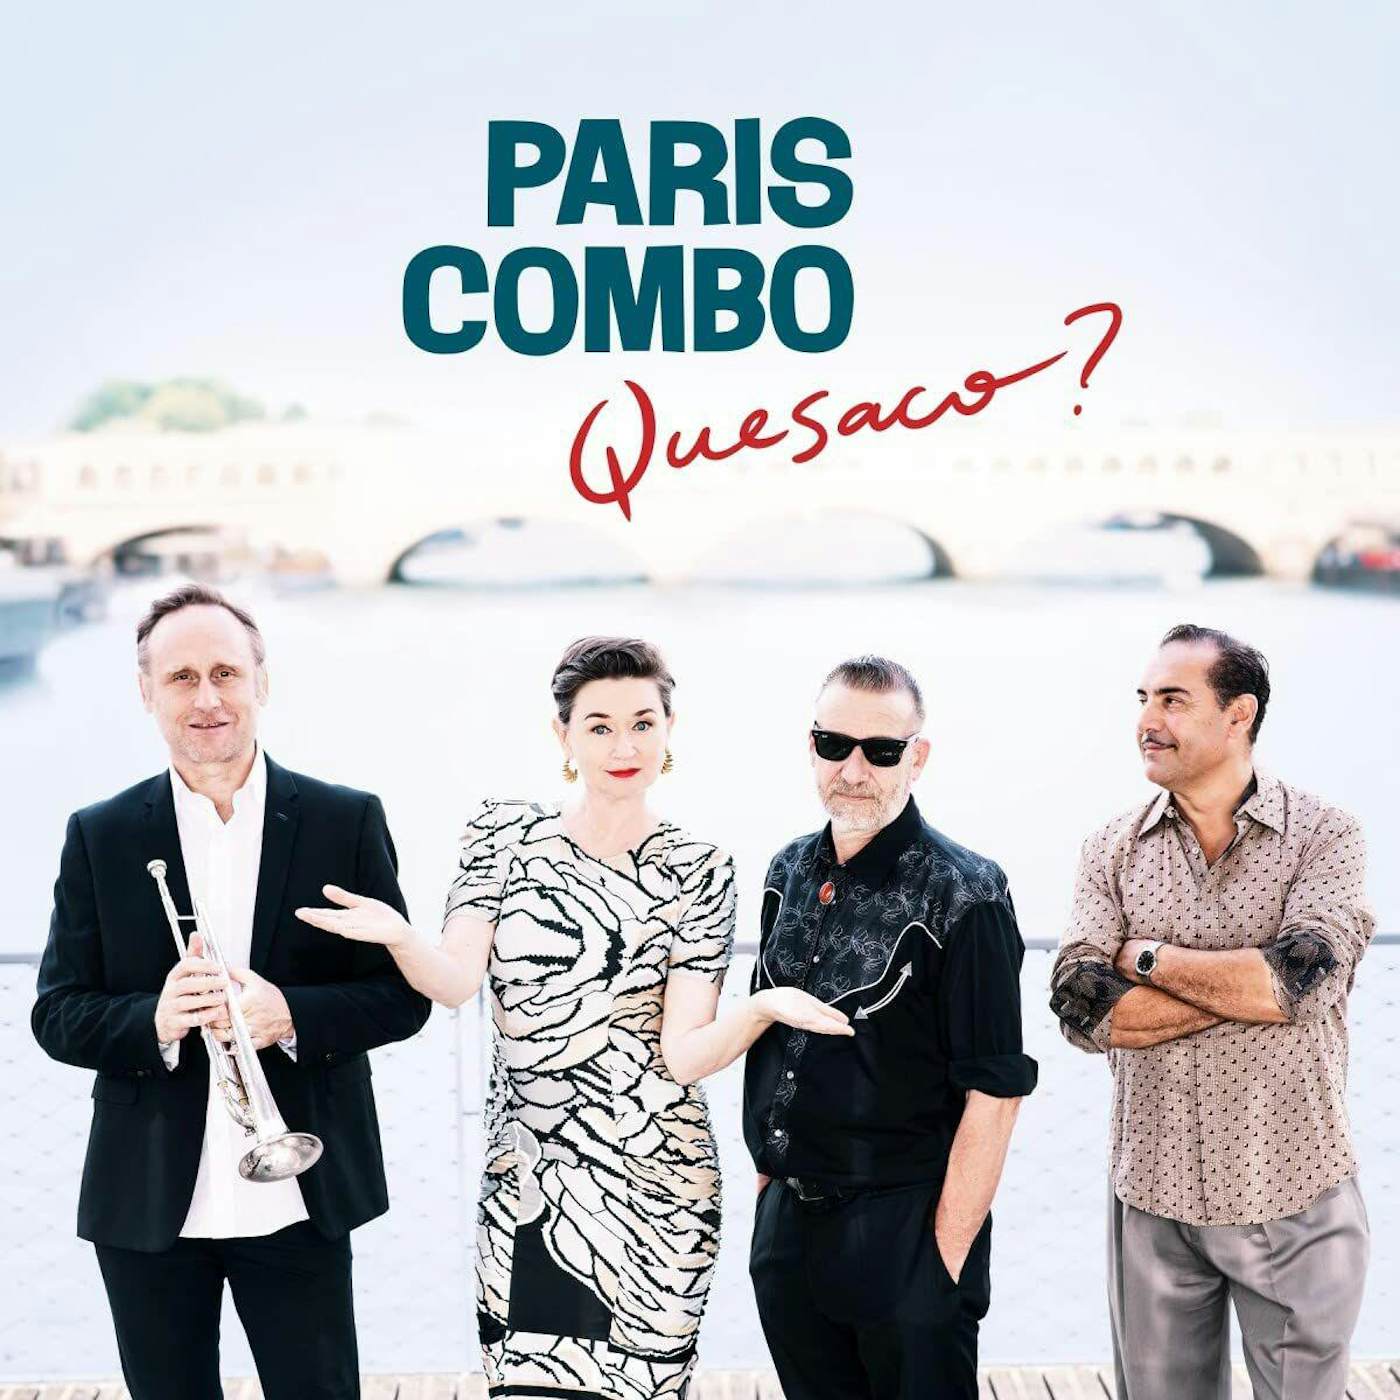 Paris Combo Quesaco Vinyl Record